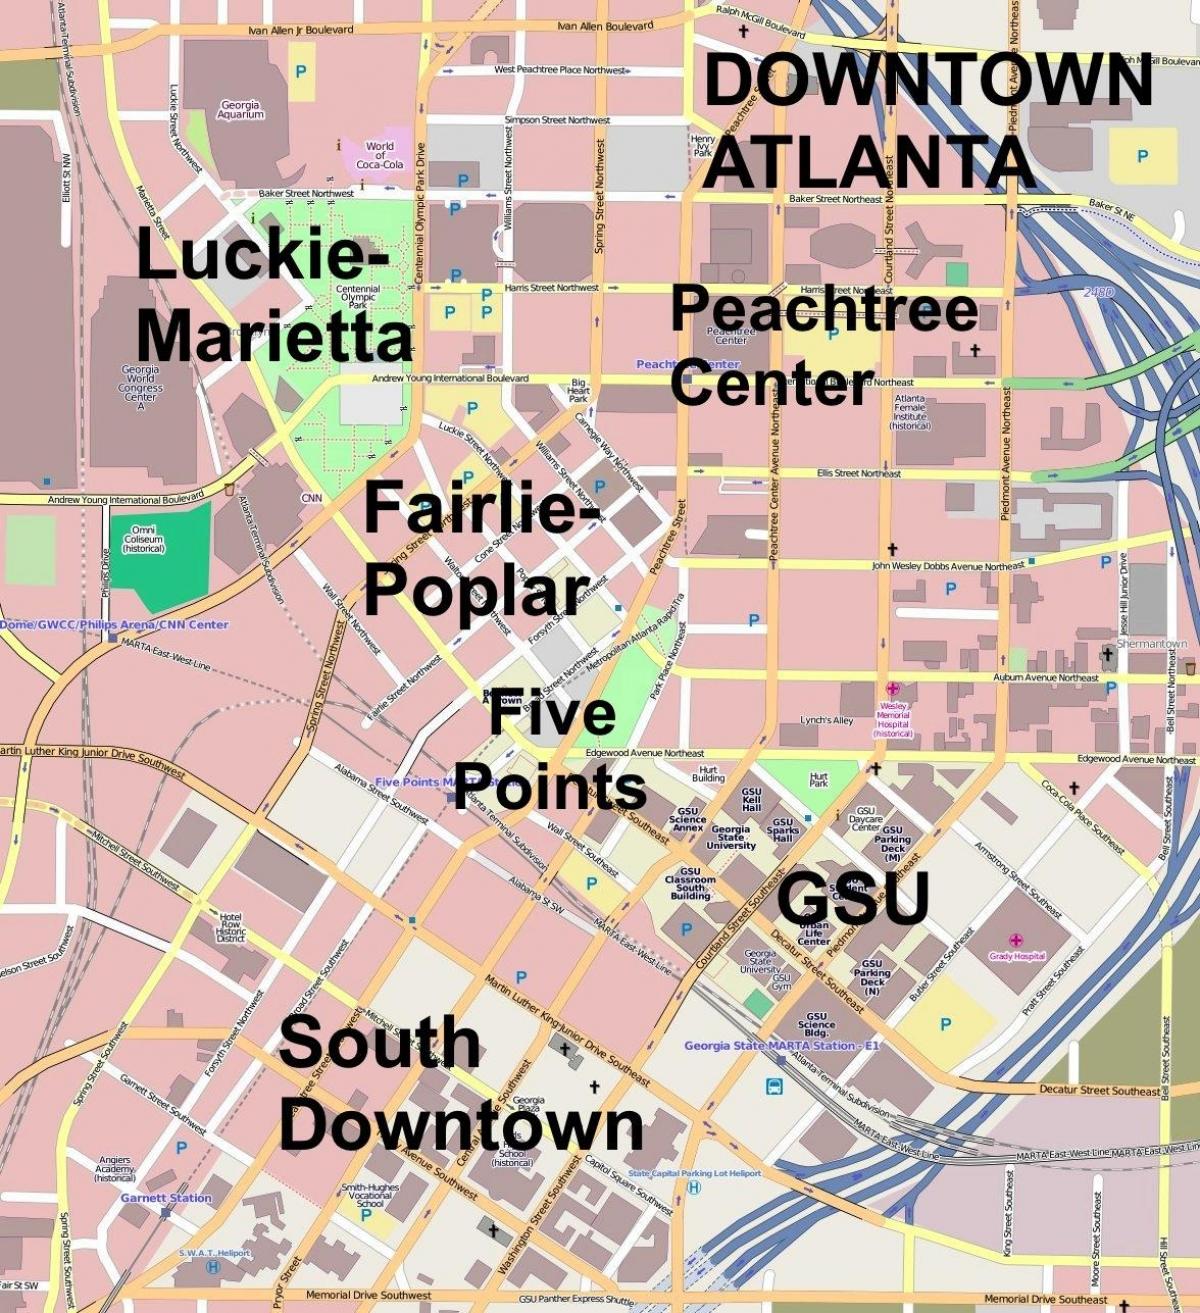 Karte von der Innenstadt von Atlanta